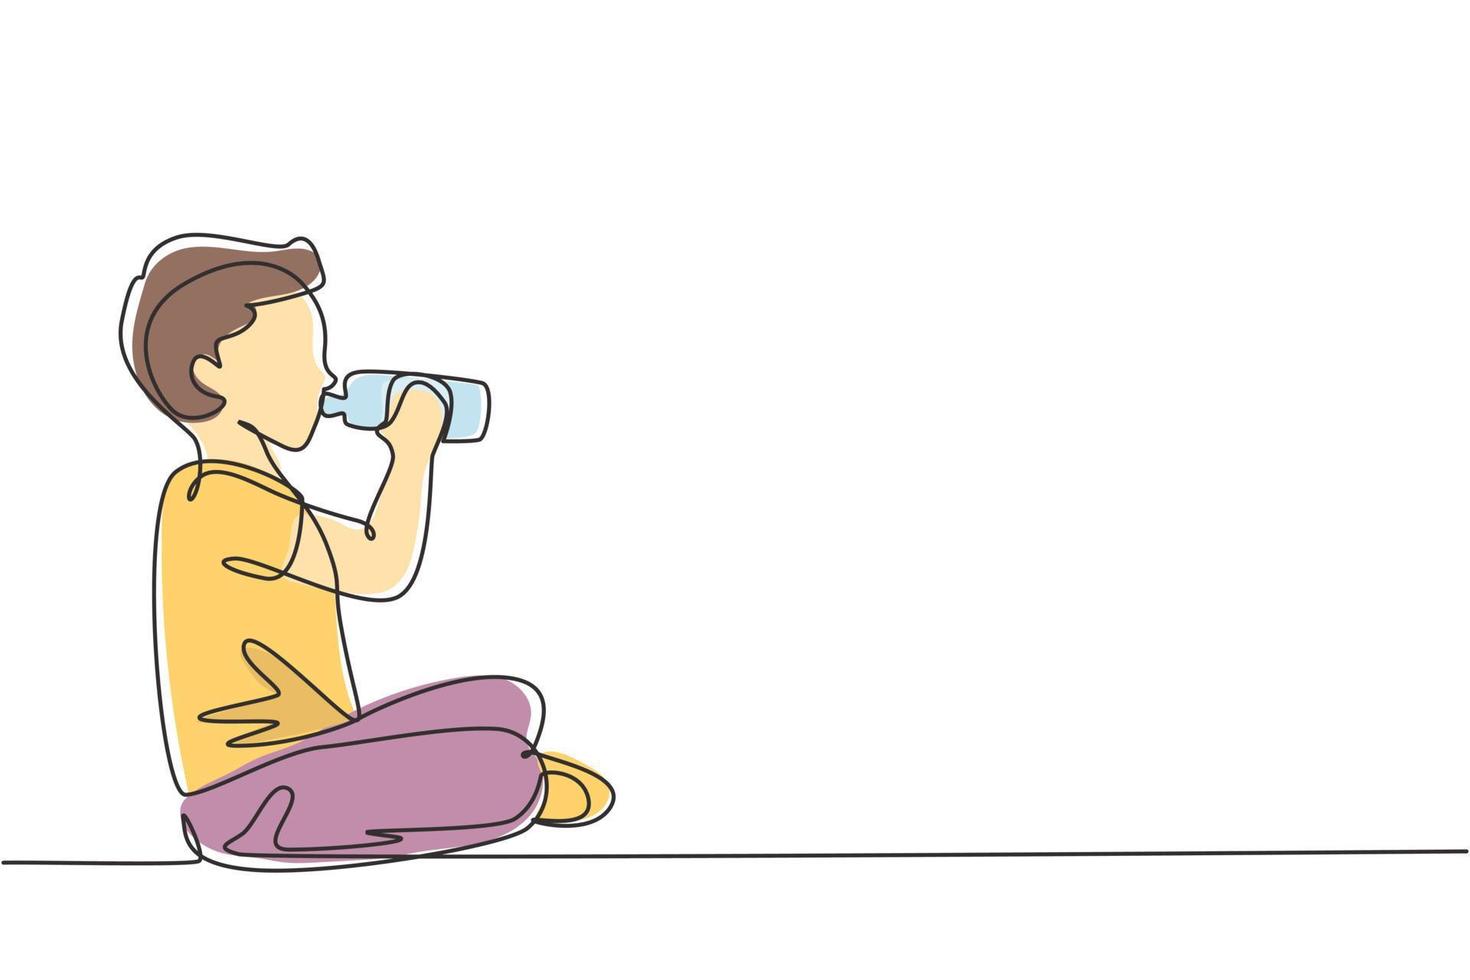 niño de dibujo de una sola línea sentado mientras disfruta de una botella de leche fresca para cumplir con la nutrición de su cuerpo. concepto de salud y crecimiento infantil. Ilustración de vector gráfico de diseño de dibujo de línea continua moderna